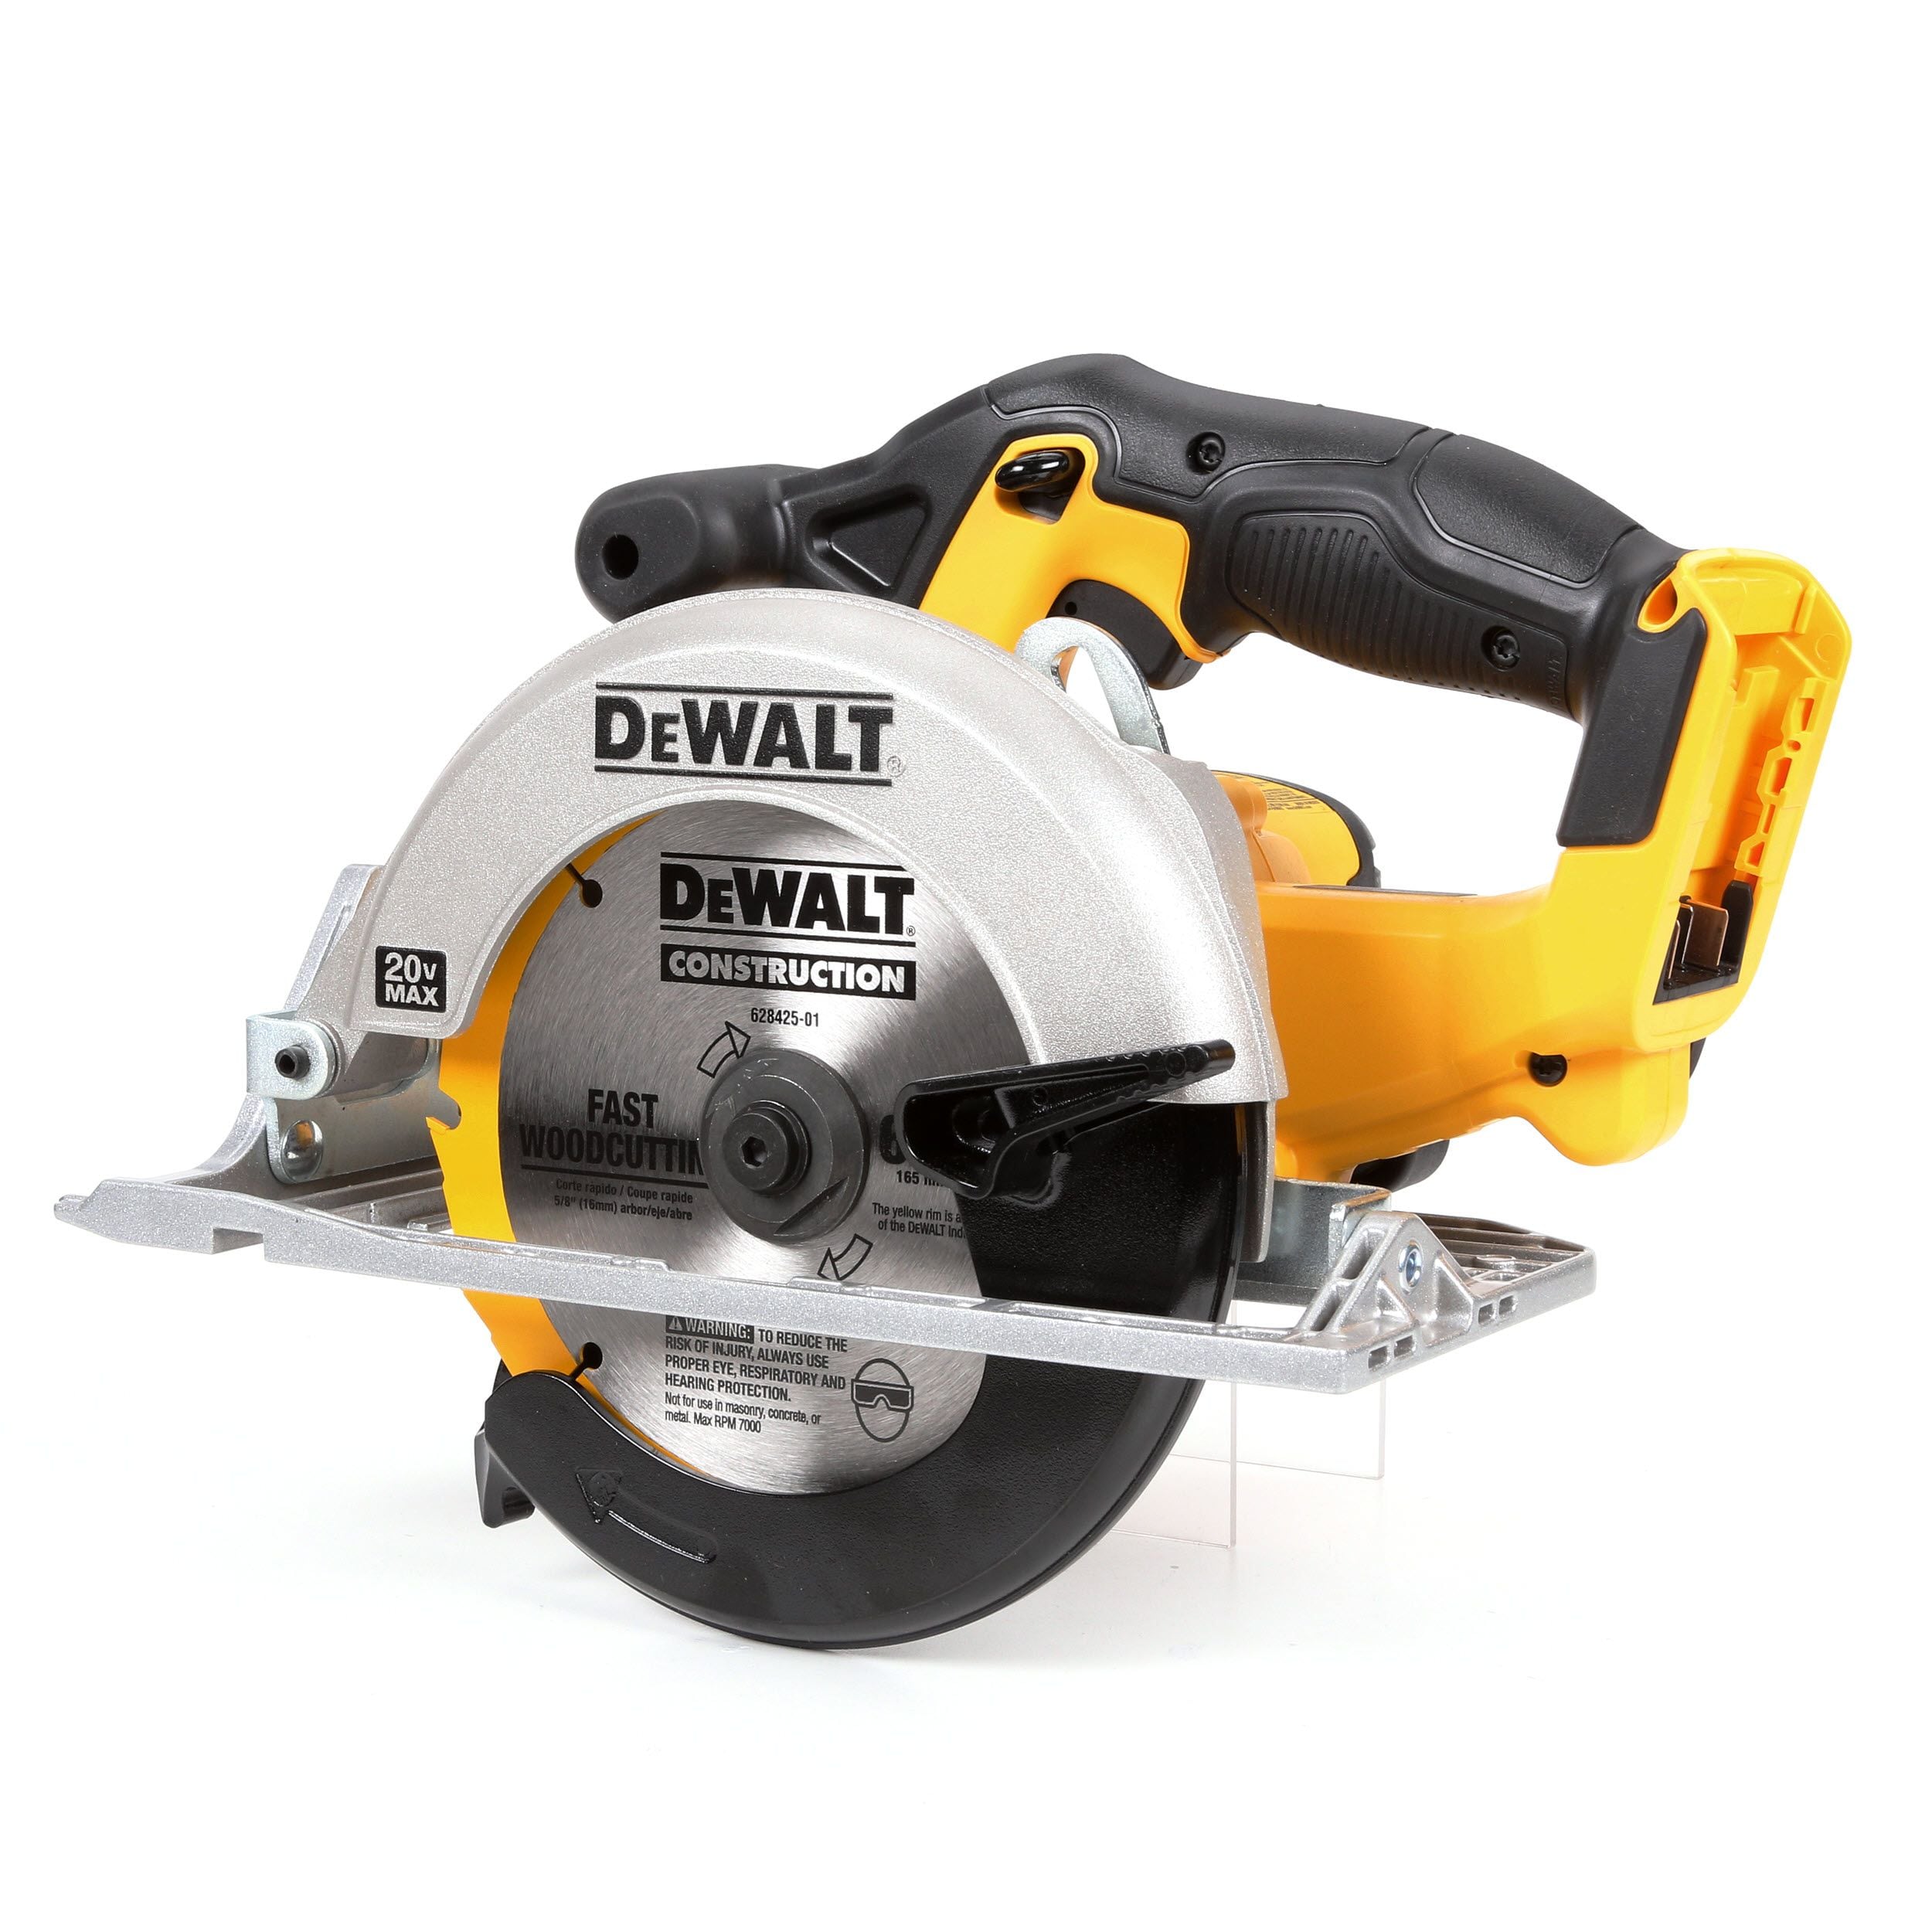 DEWALT DCS391 20V MAX 6-1/2 inch Circular Saw for sale online